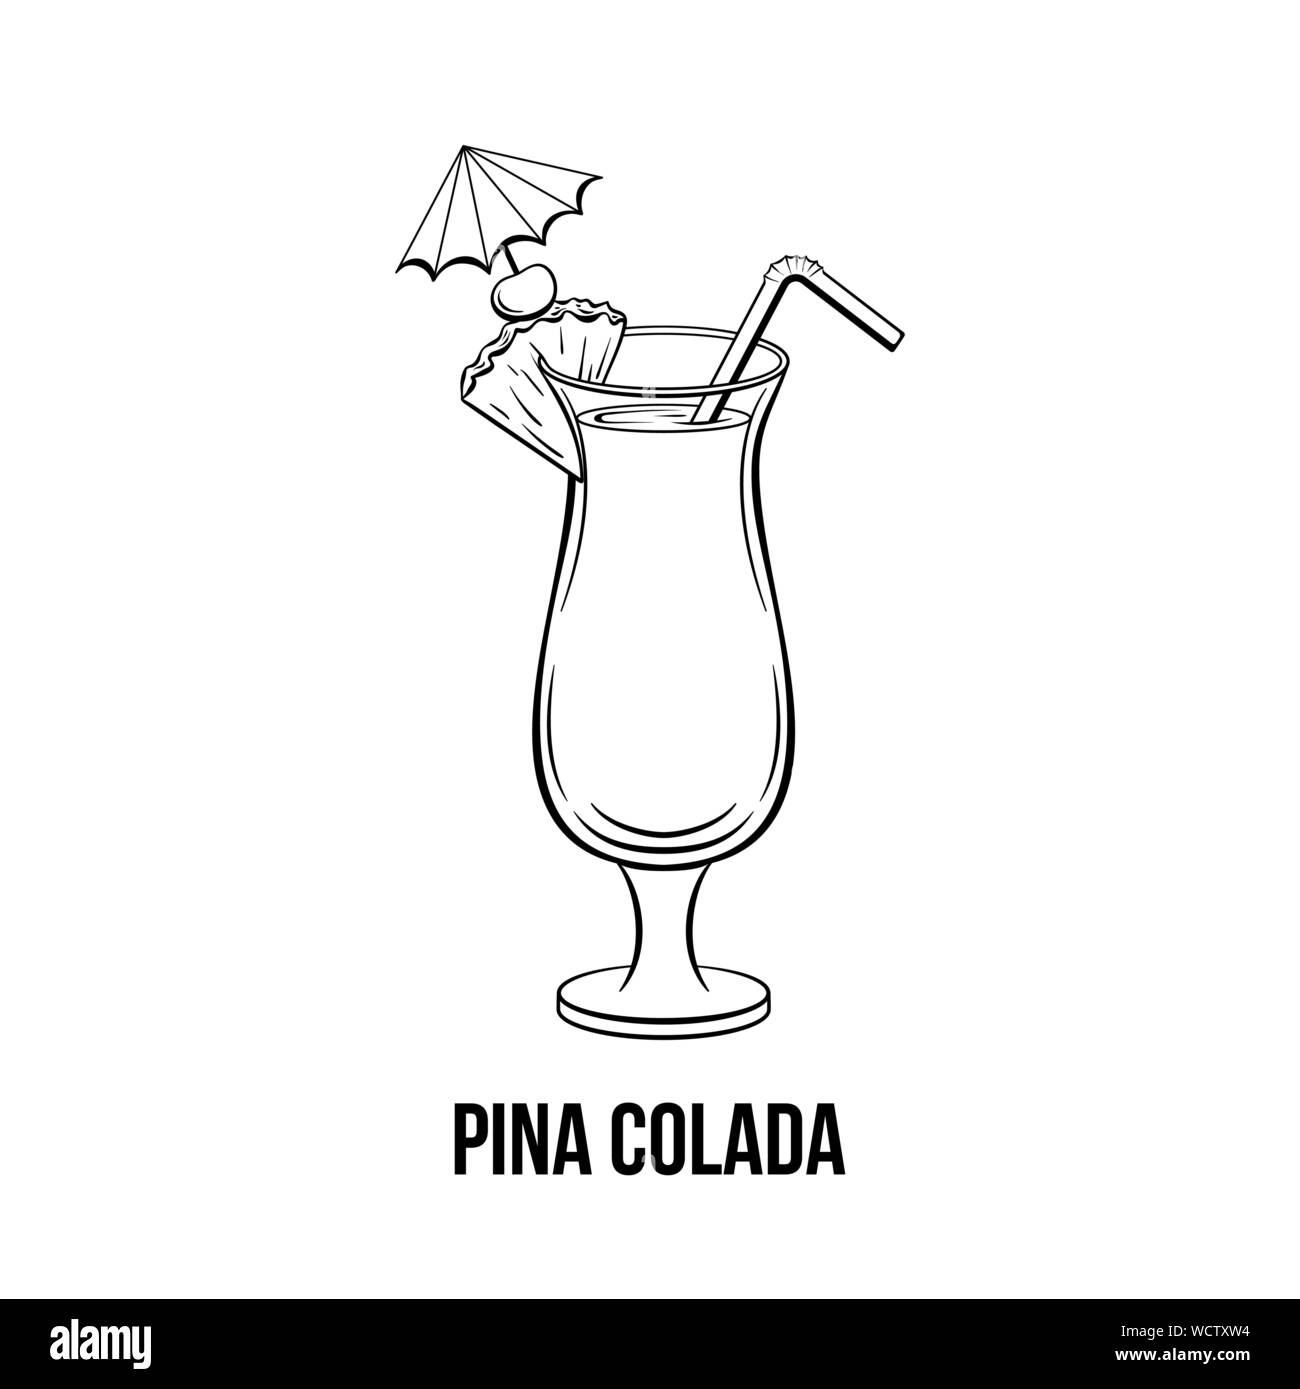 Pina Colada verre noir et blanc illustration dessiné à la main. Scieries de boisson alcoolisée avec parapluie, de la paille. Cocktail de plage. Tranche d'ananas cocktail avec de l'encre. Menu de bar, élément de design de l'affiche Illustration de Vecteur